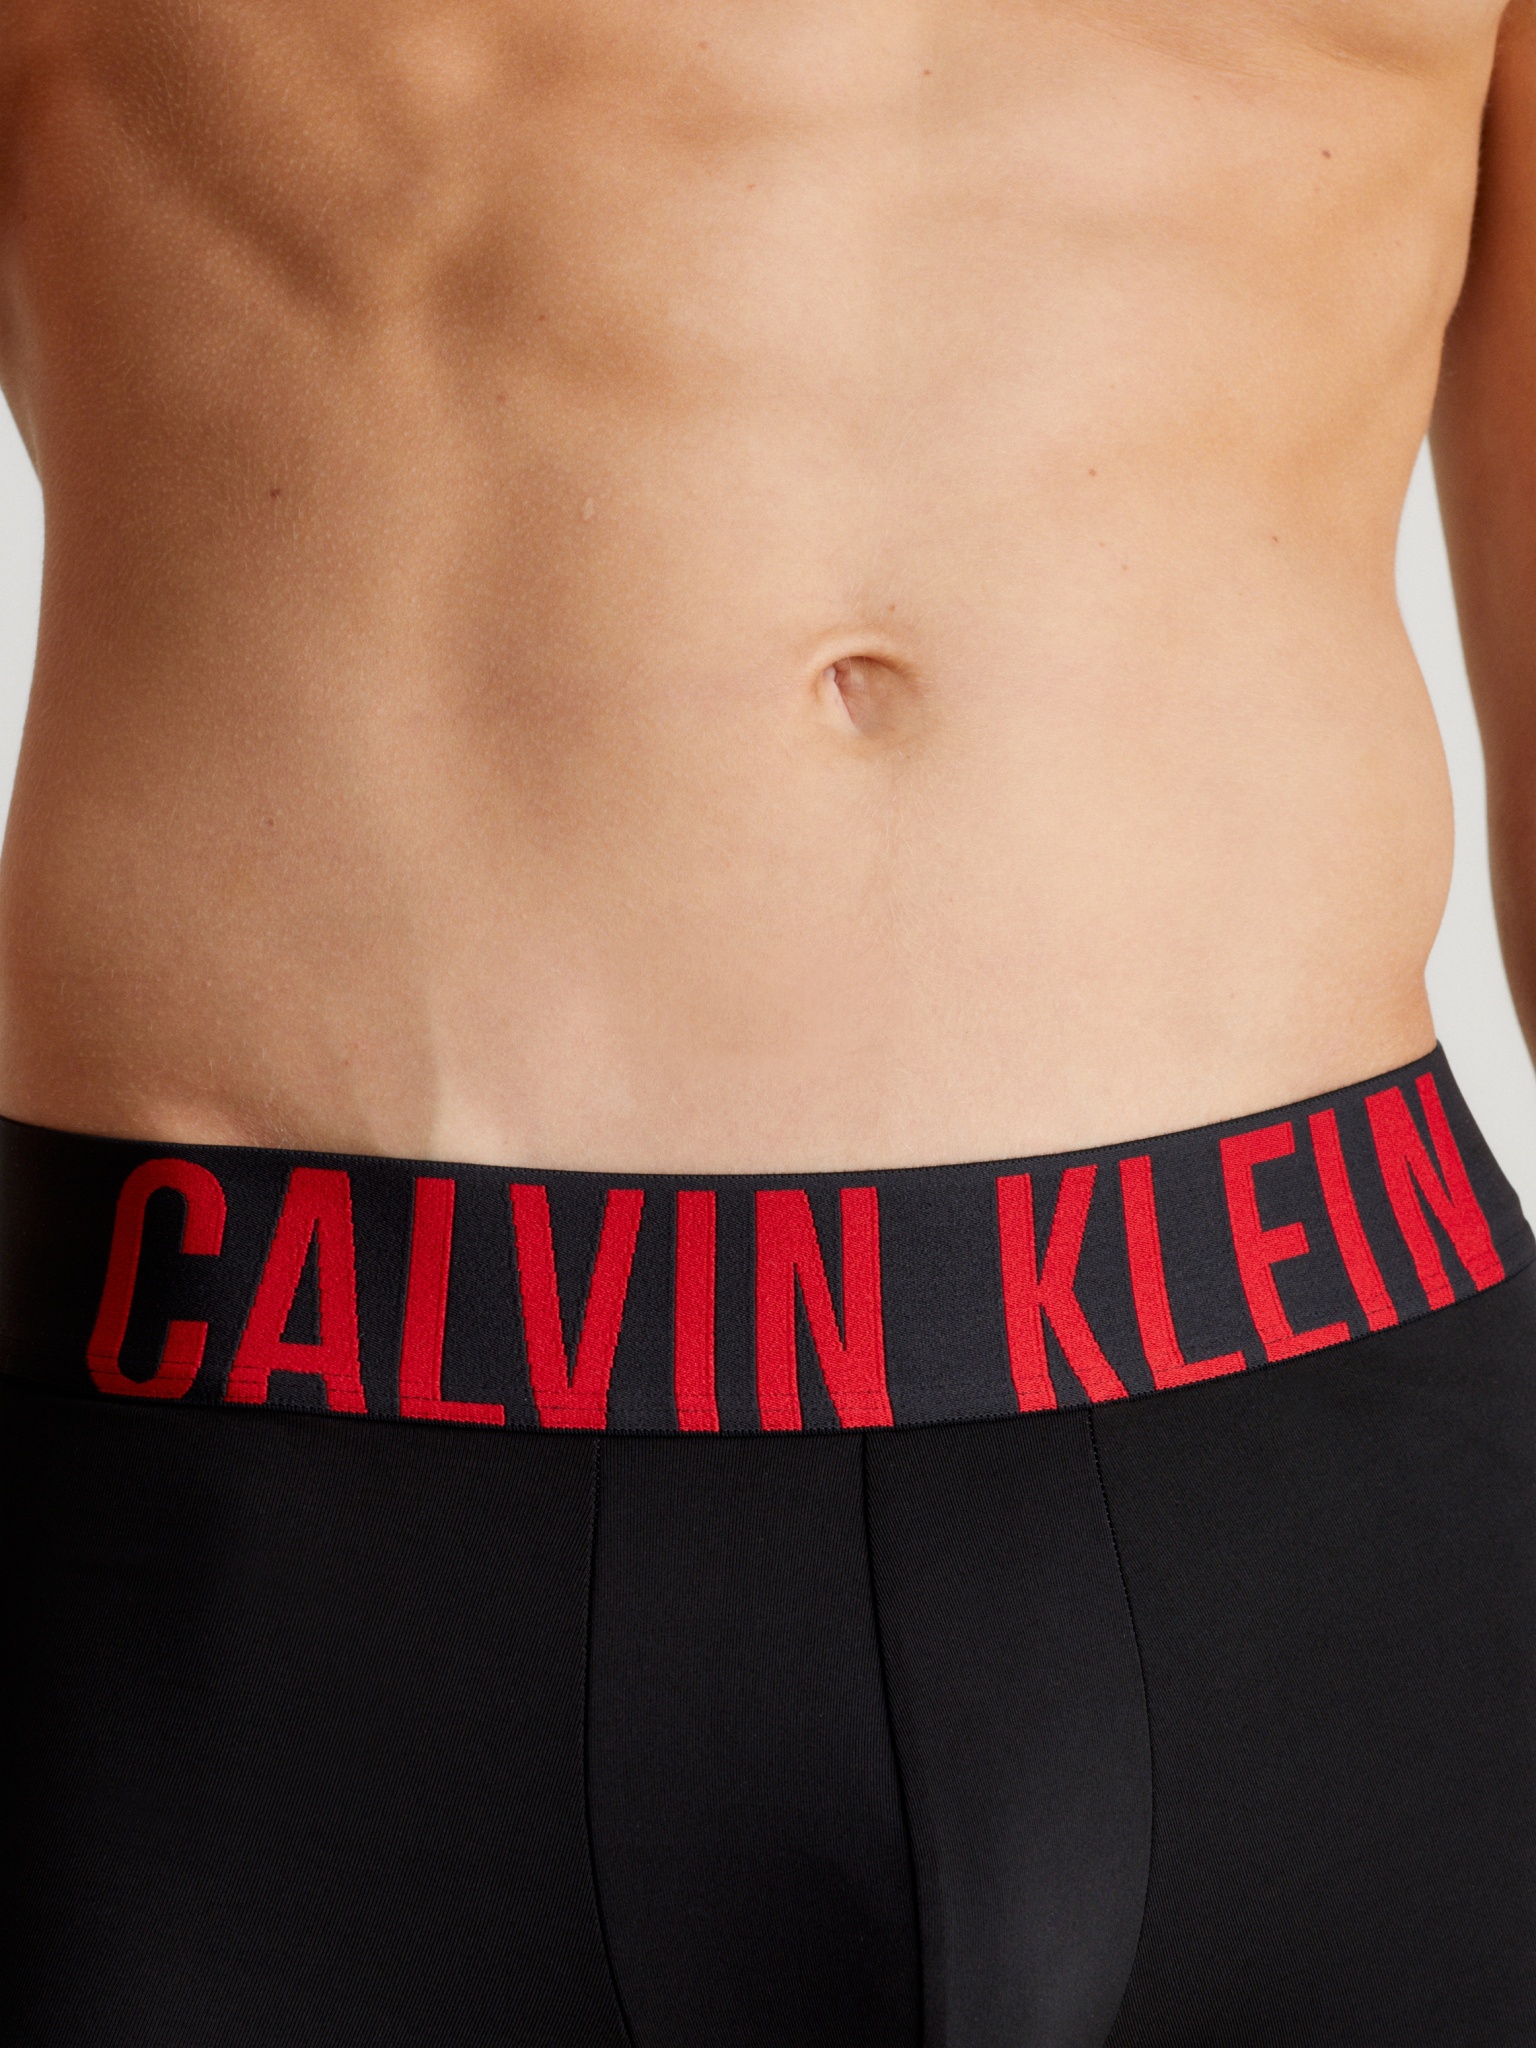 CALVIN KLEIN 3er-Pack Boxershorts 10734327